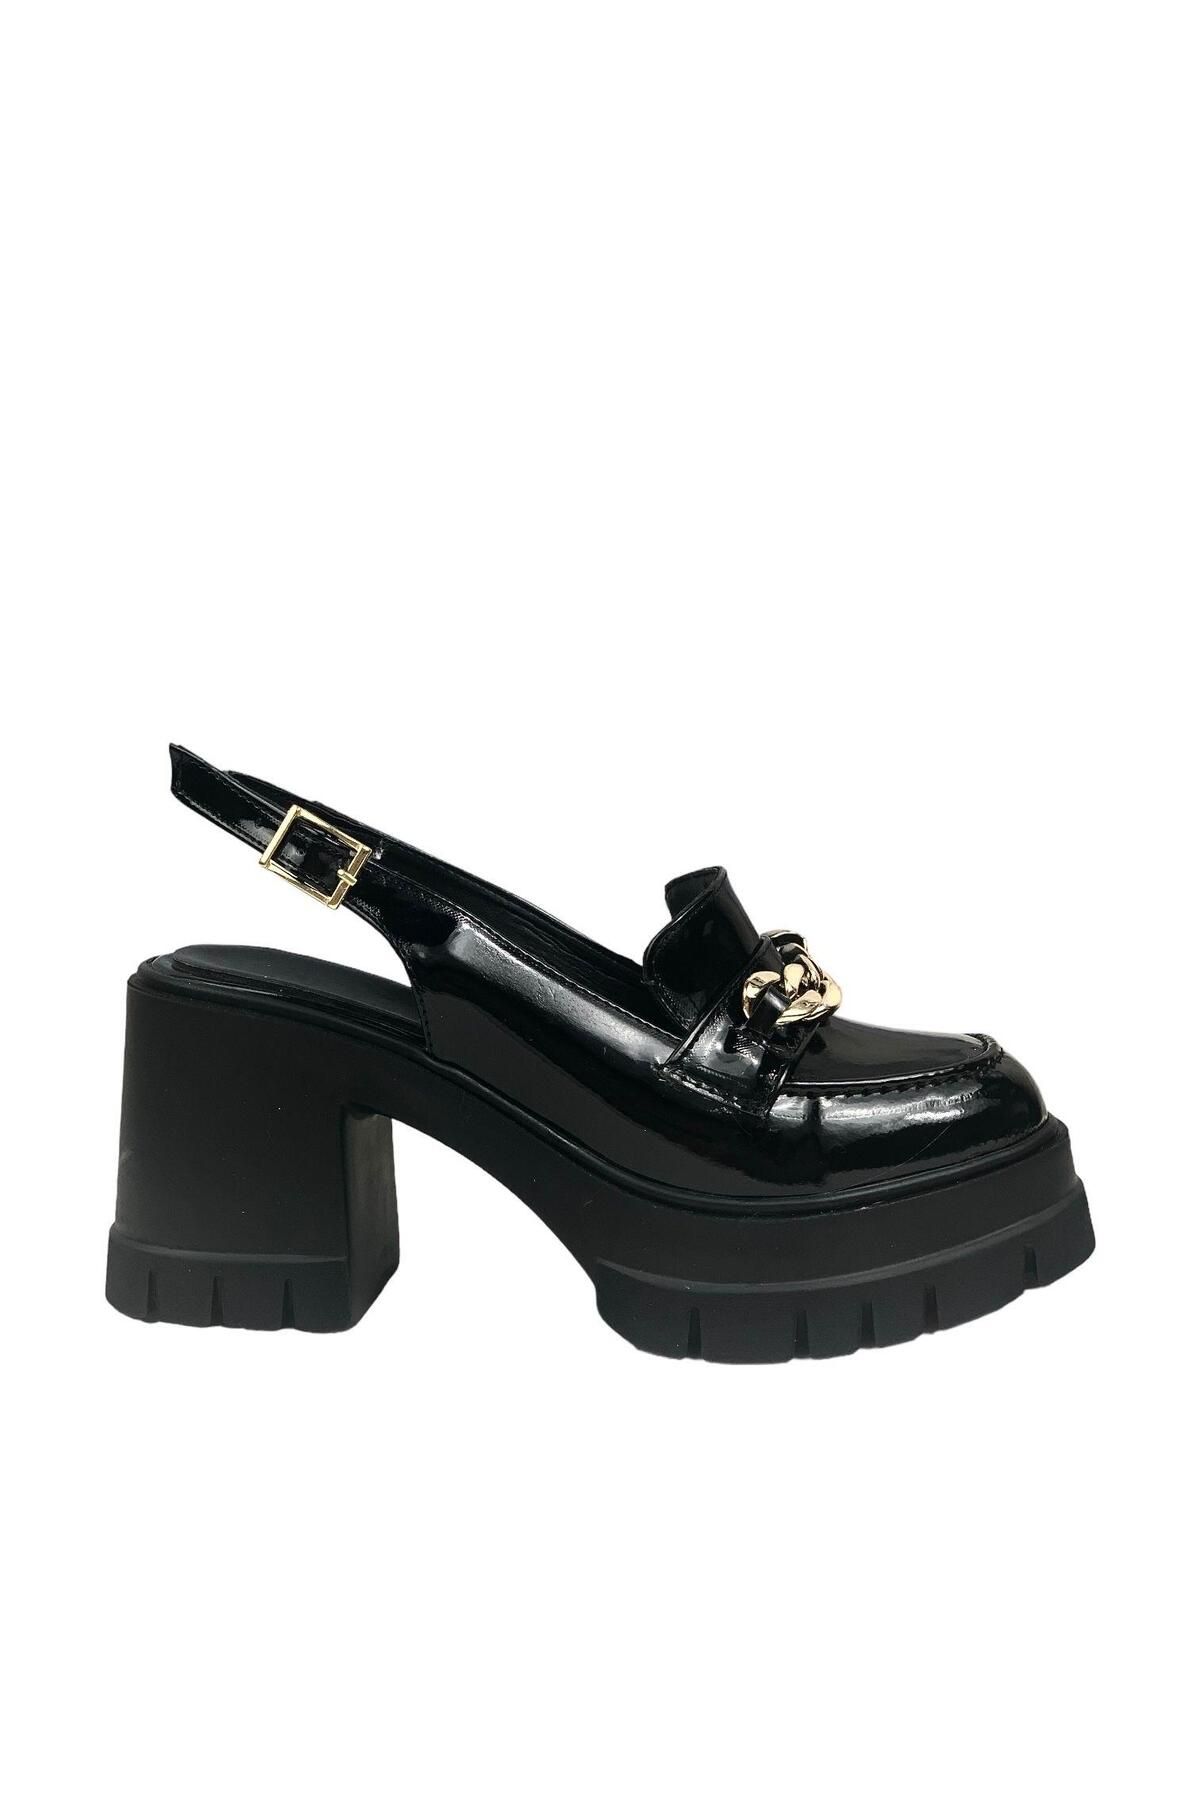 bescobel Kadın Hutyam Siyah Rugan Arkası Açık Leofer Ayakkabı Zincir Tokalı 10 cm 650